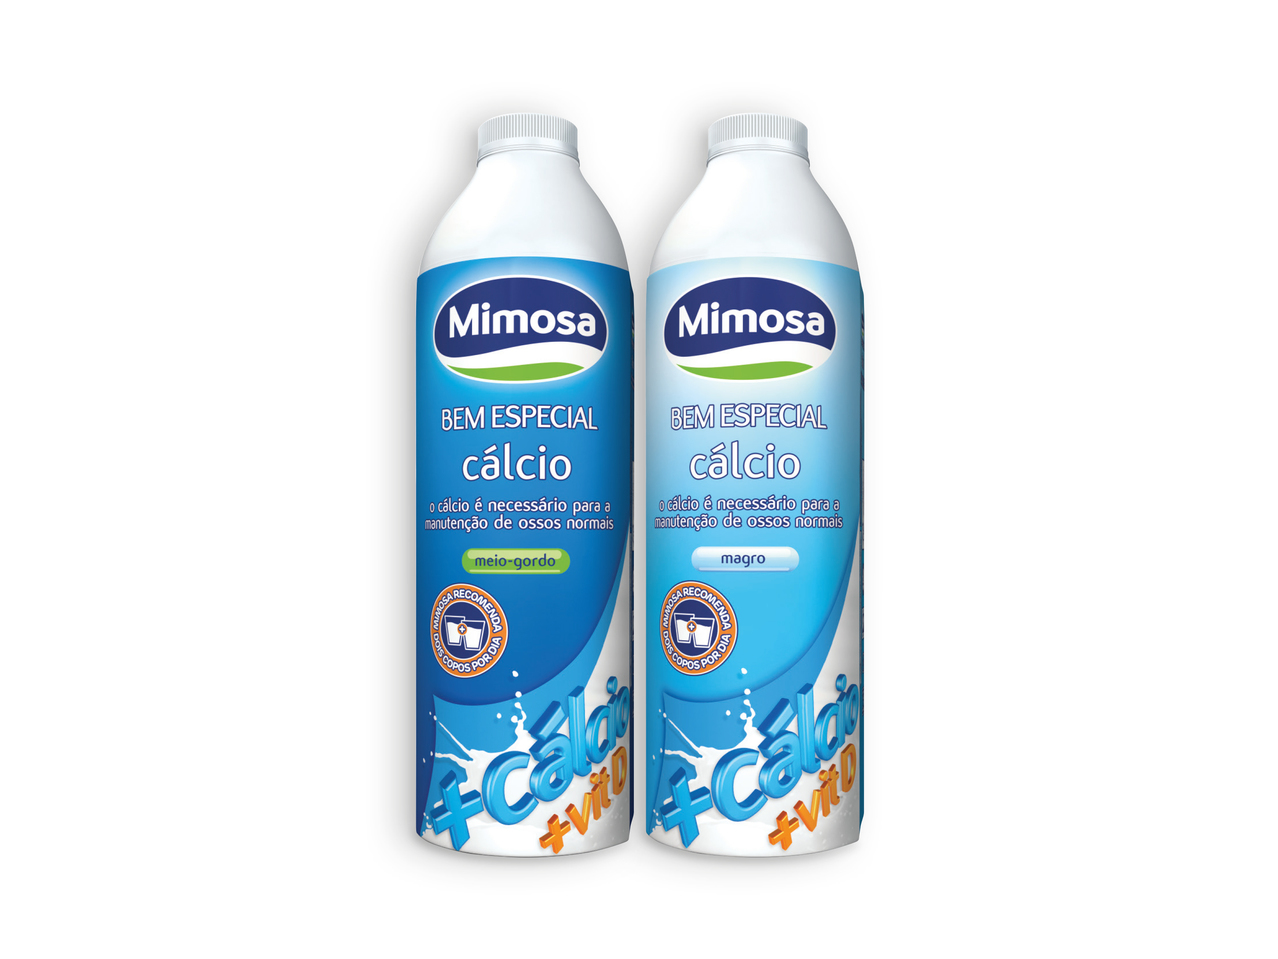 MIMOSA(R) Leite Especial Cálcio Meio-gordo / Magro